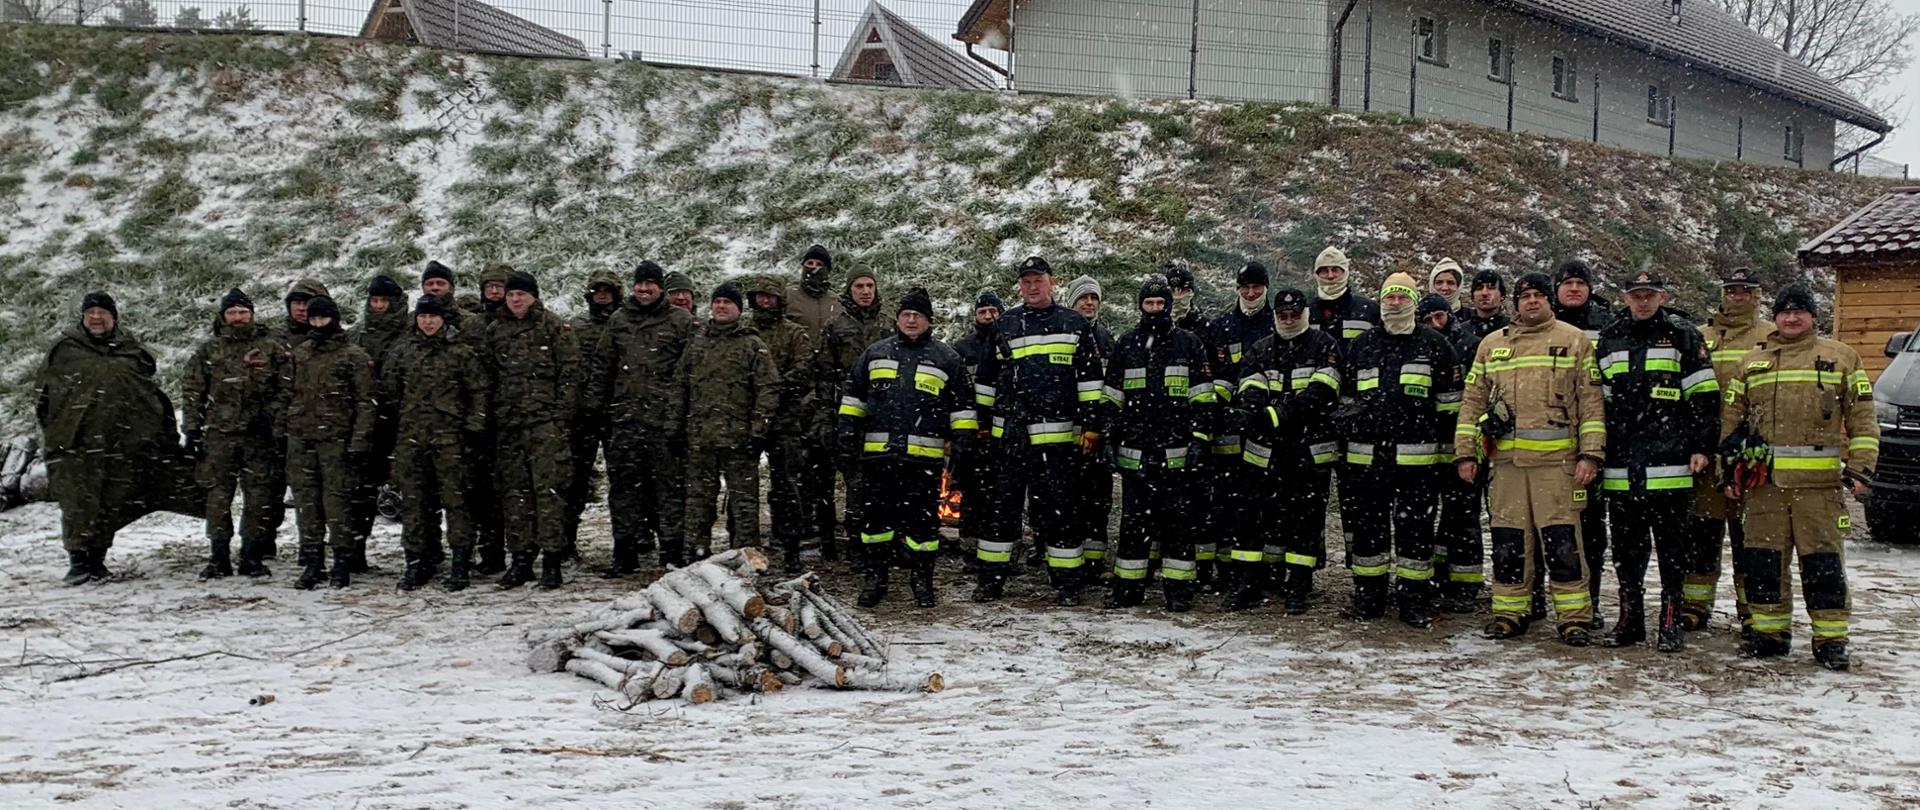 Zdjęcie zbiorowe uczestników szkolenia. Od lewej strony znajduje się 16 żołnierzy WOT następnie stoi 18 strażaków. 